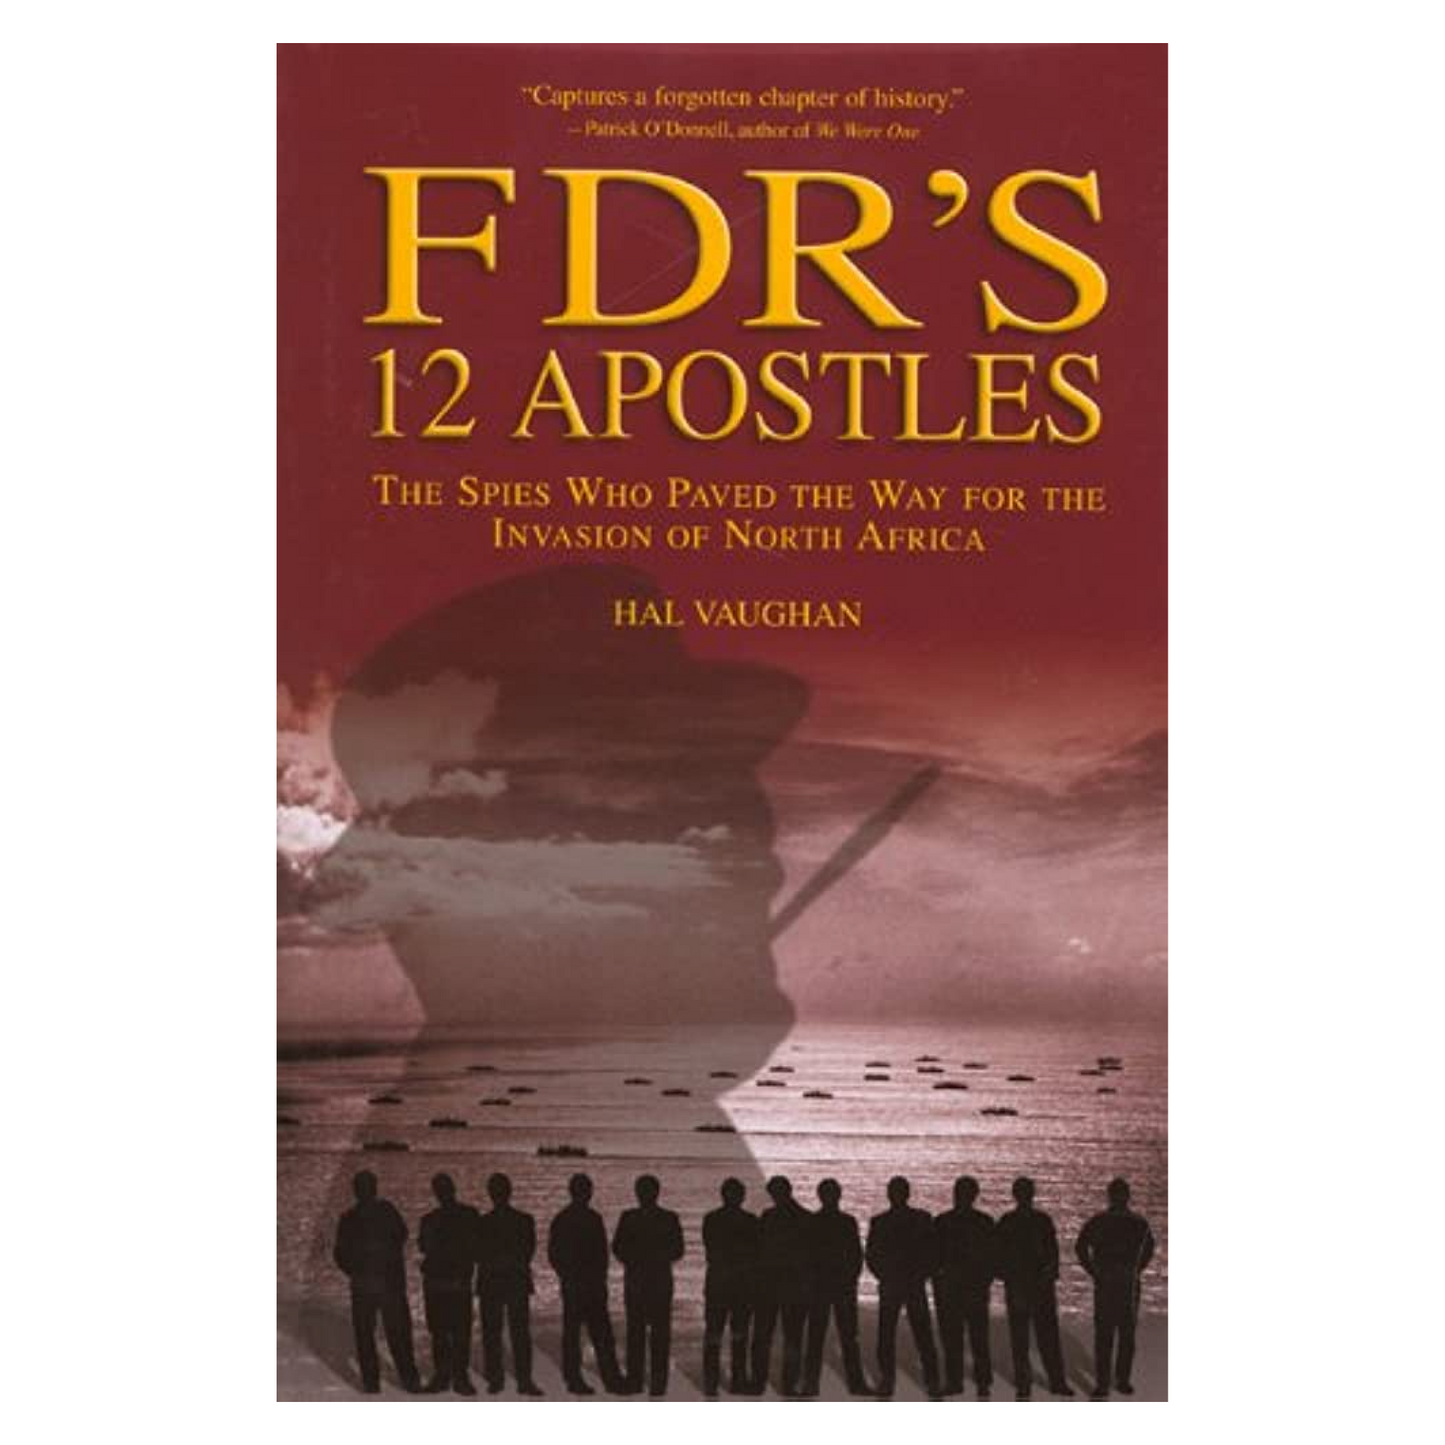 FDR's 12 Apostles